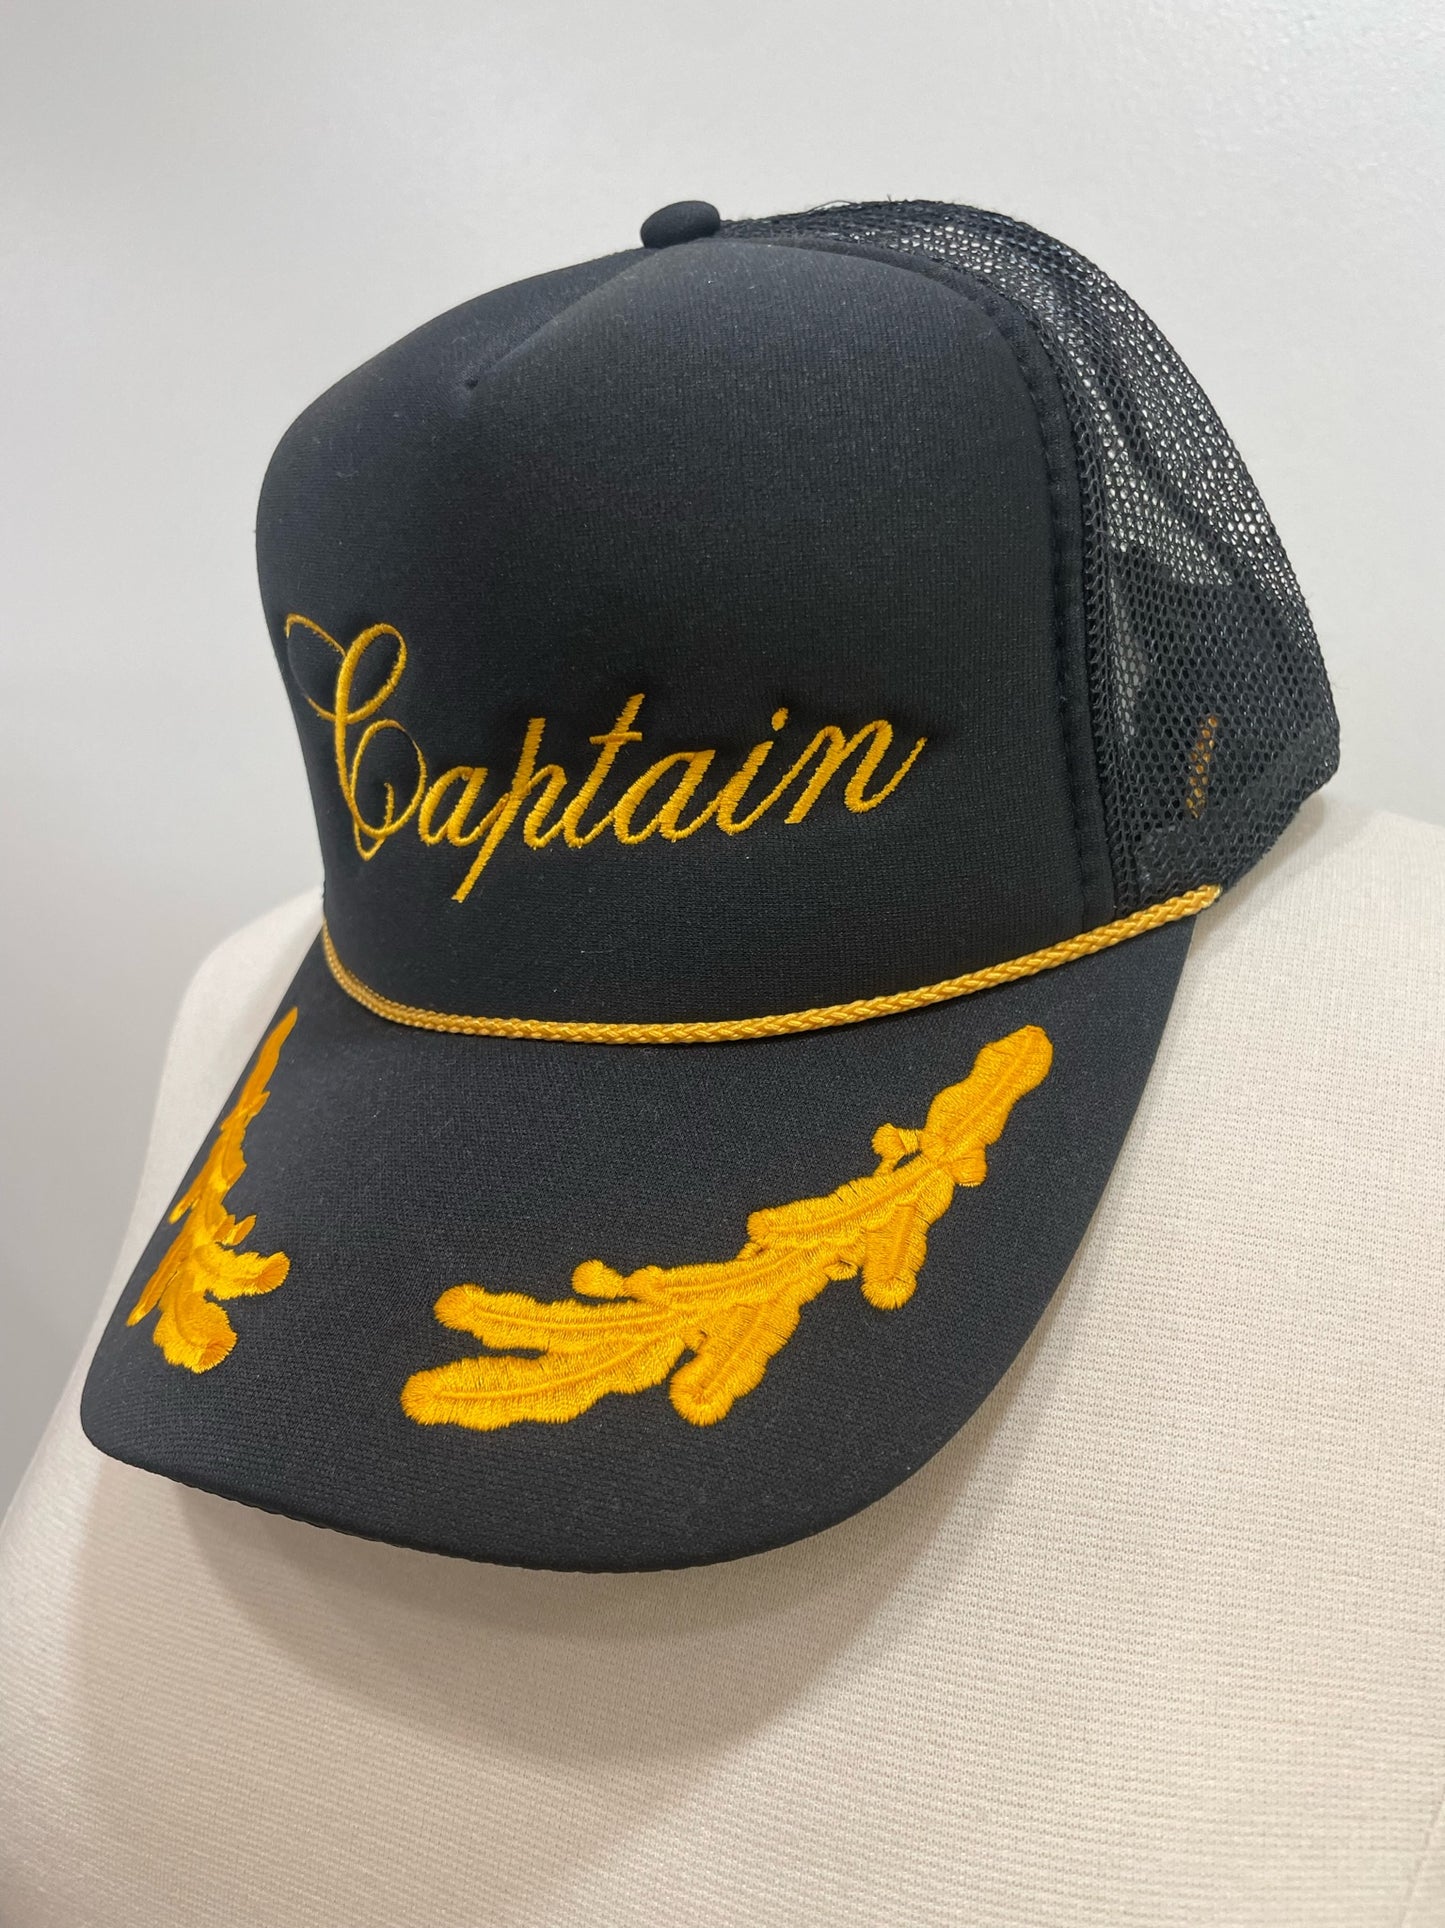 Captain - Trucker Hat